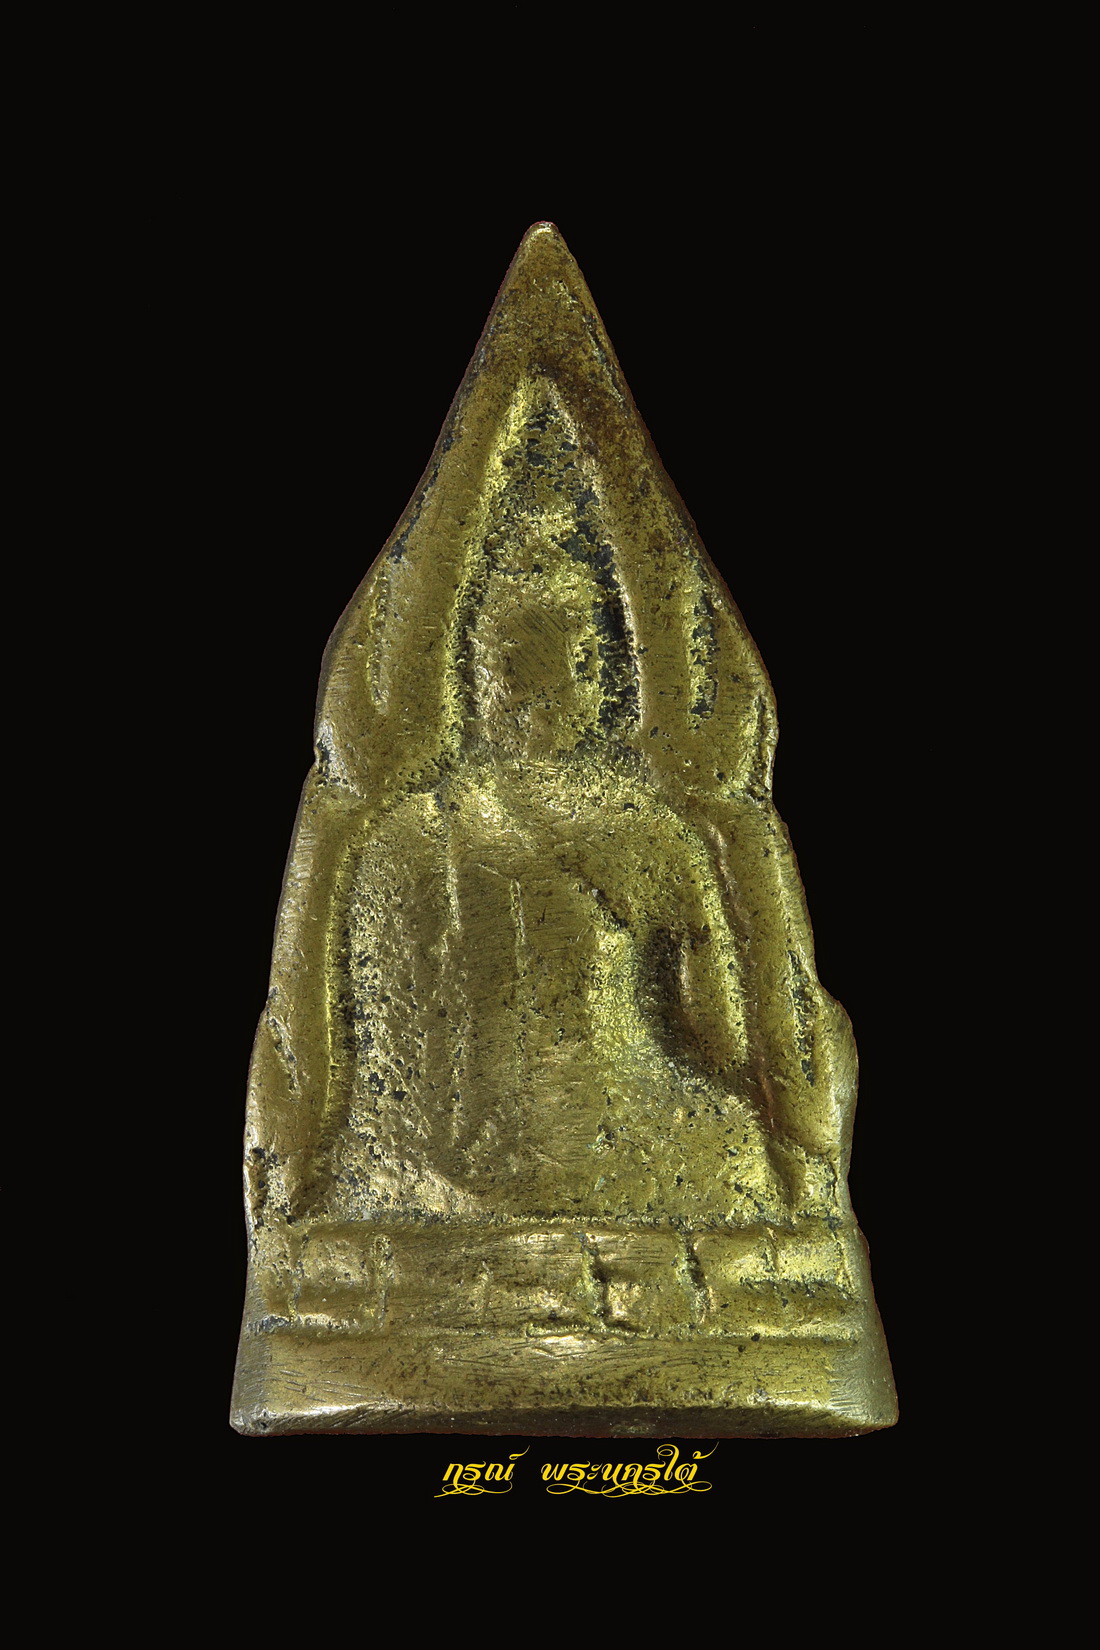 พระพุทธชินราช ปี ๒๕๐๐ "ศิริเลขการ"